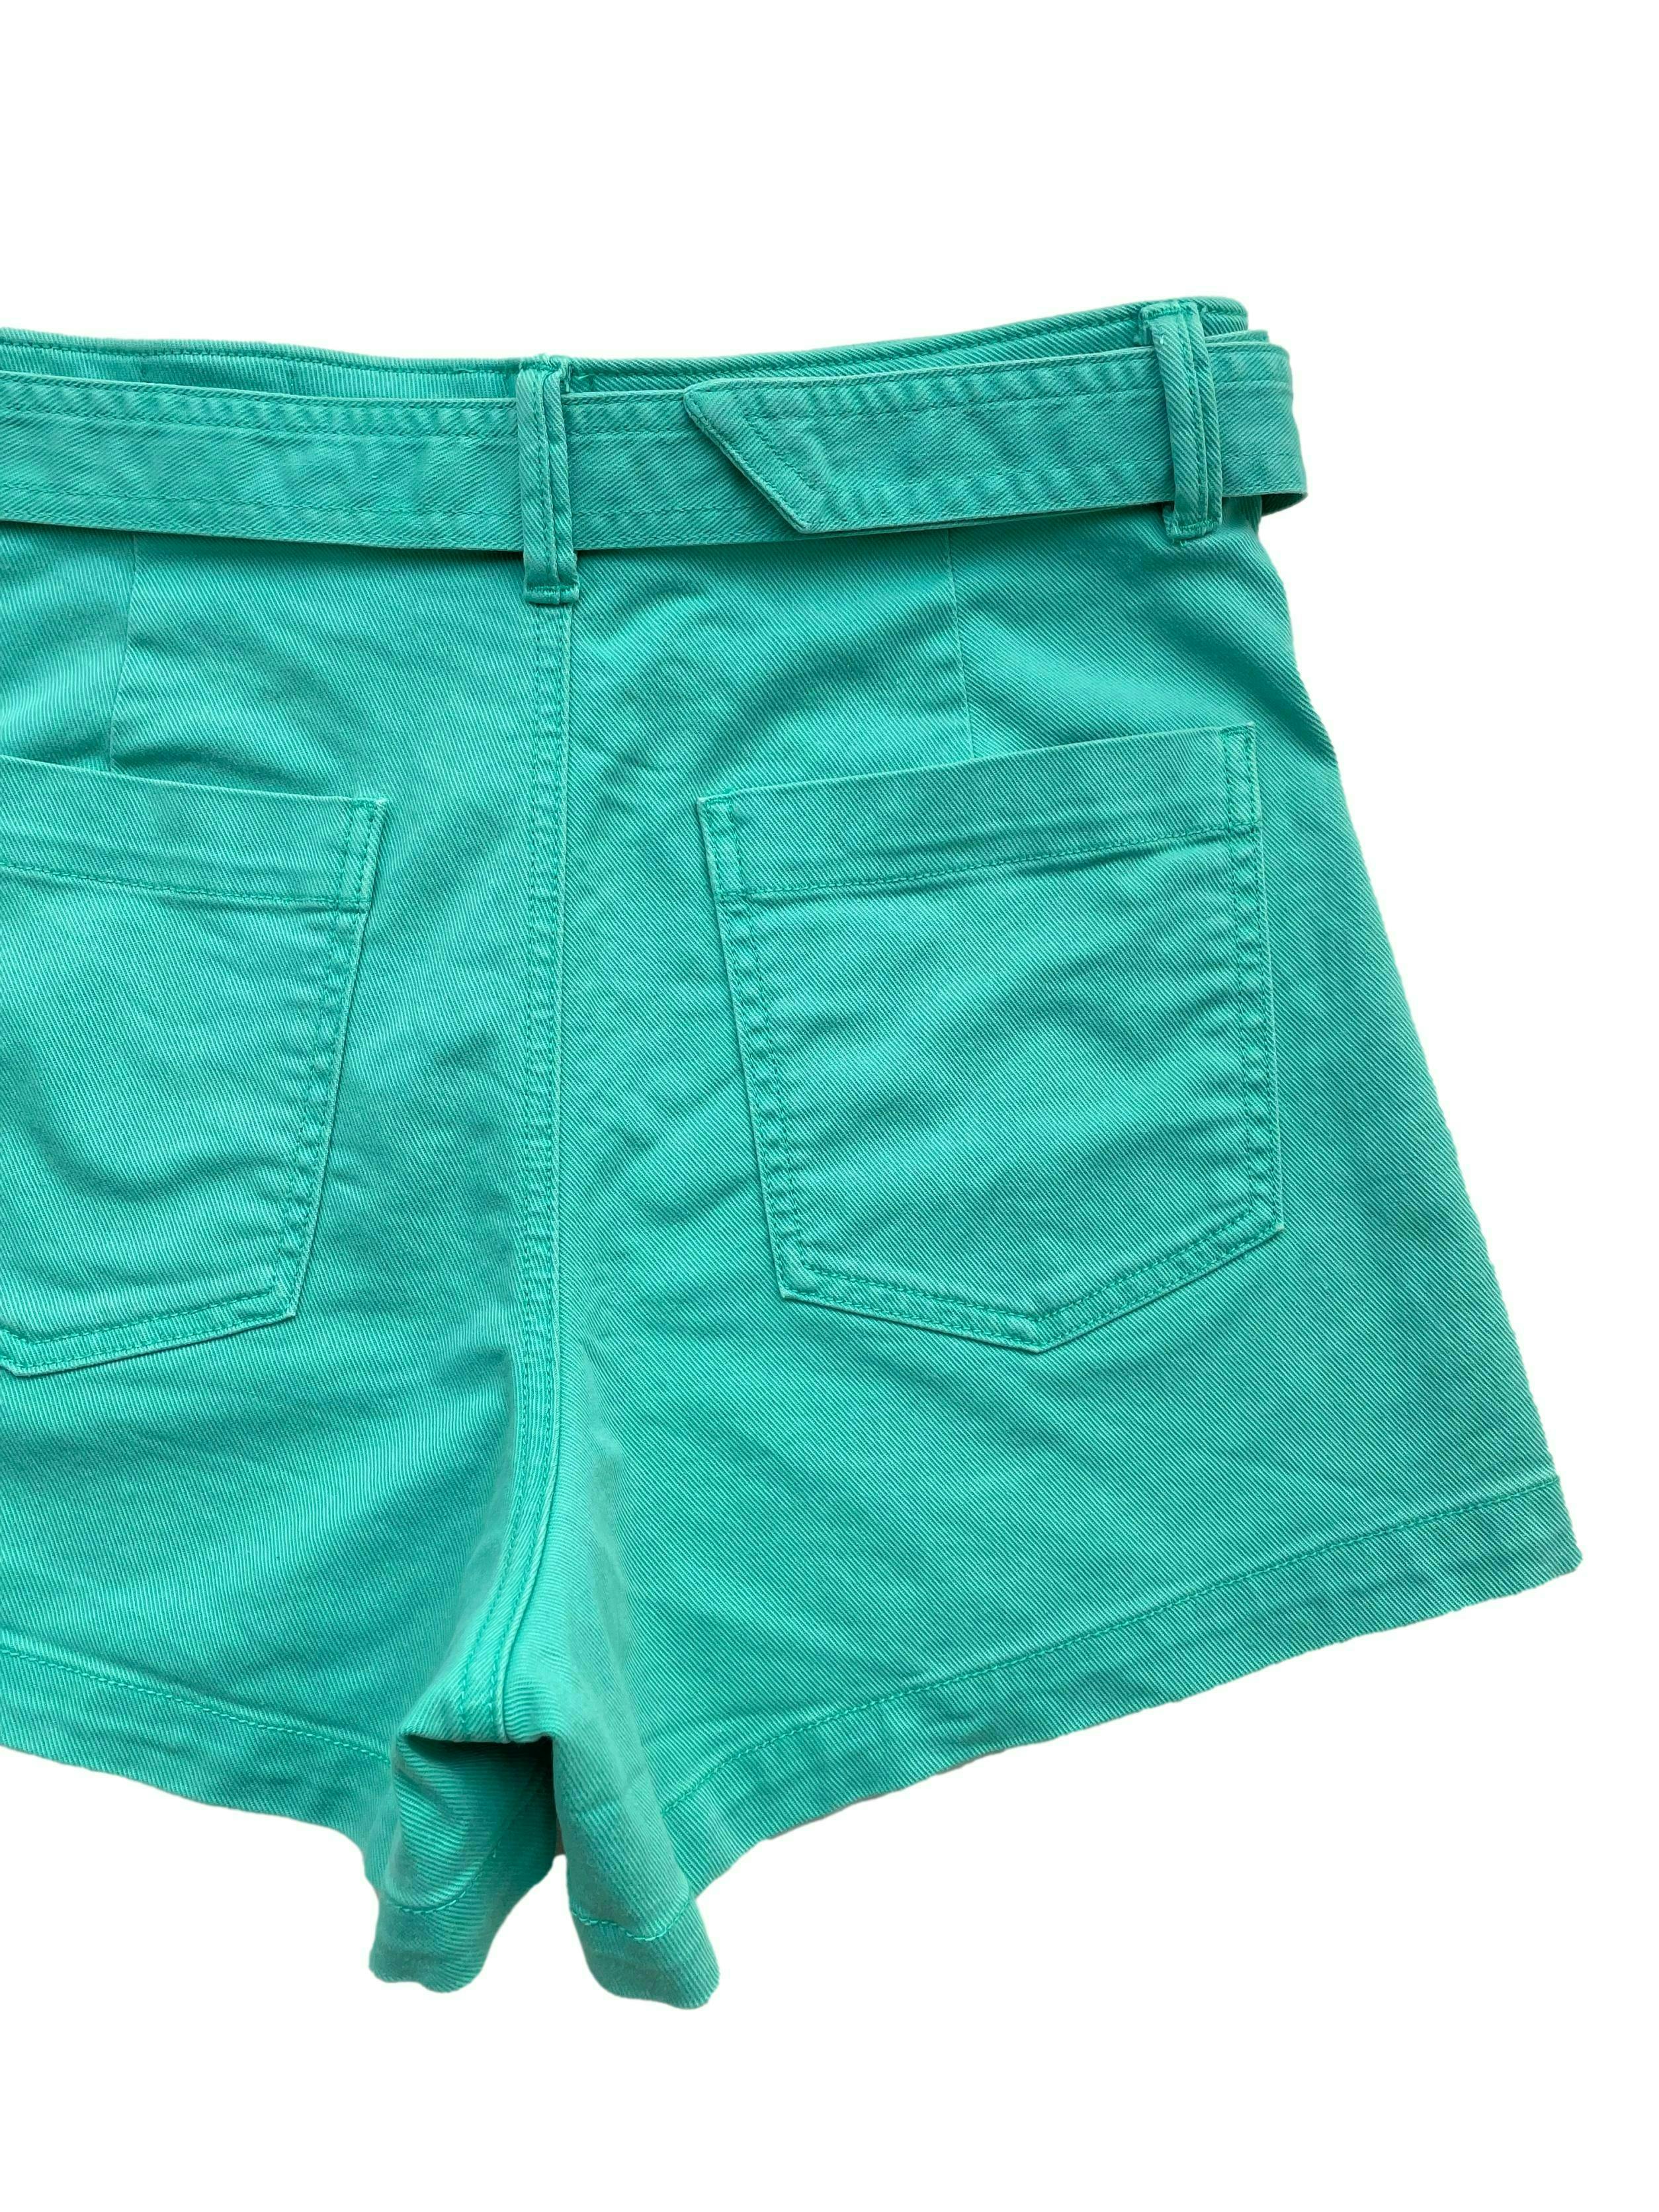 Short Gap de jean verde, a la cintura con correa. Cintura 78cm Largo 35cm. Precio original S/169